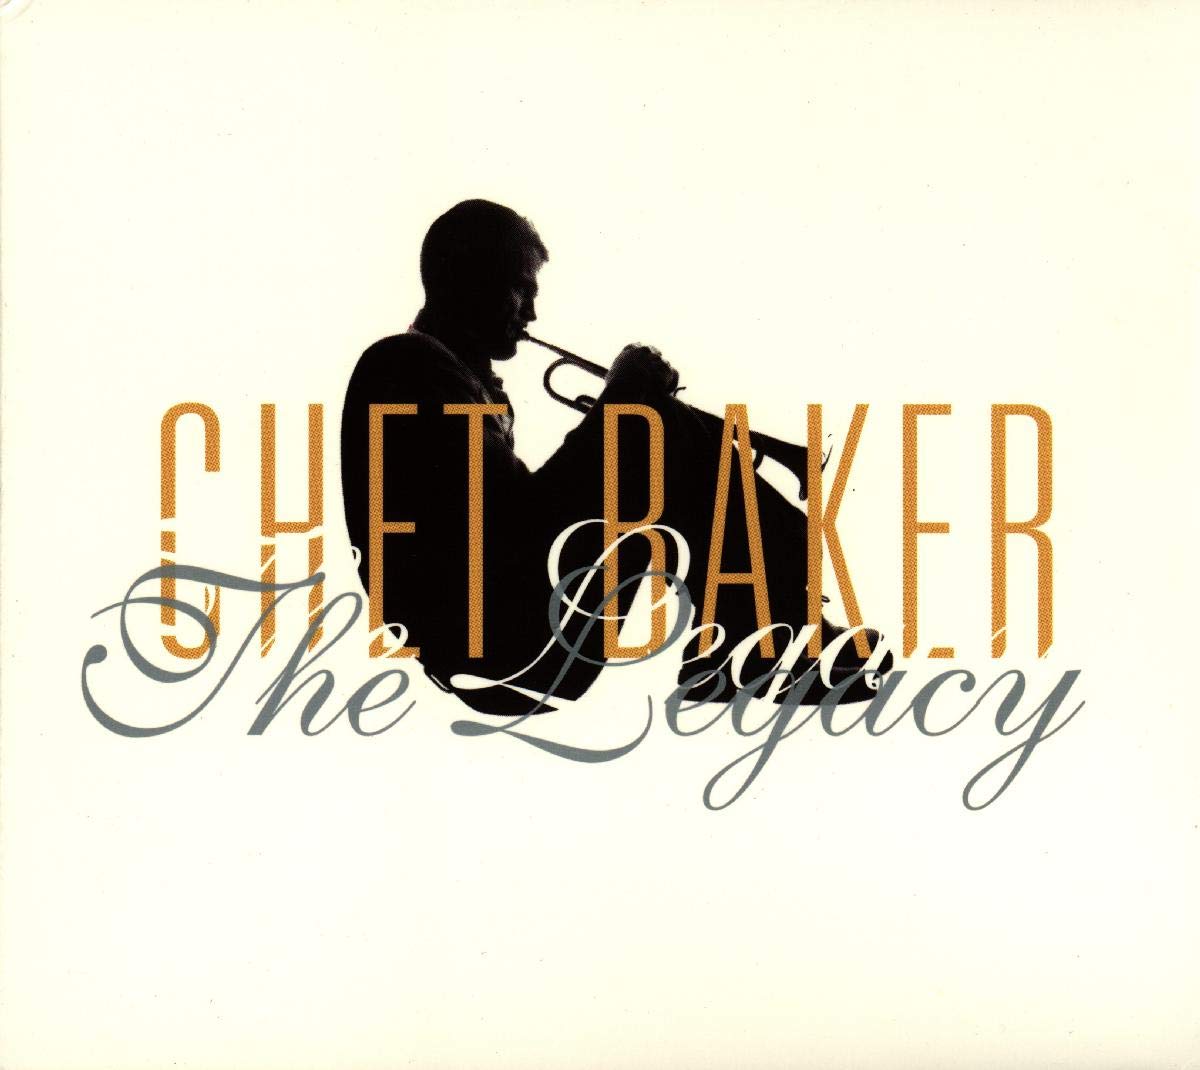 Chet Baker- The Legacy - Darkside Records